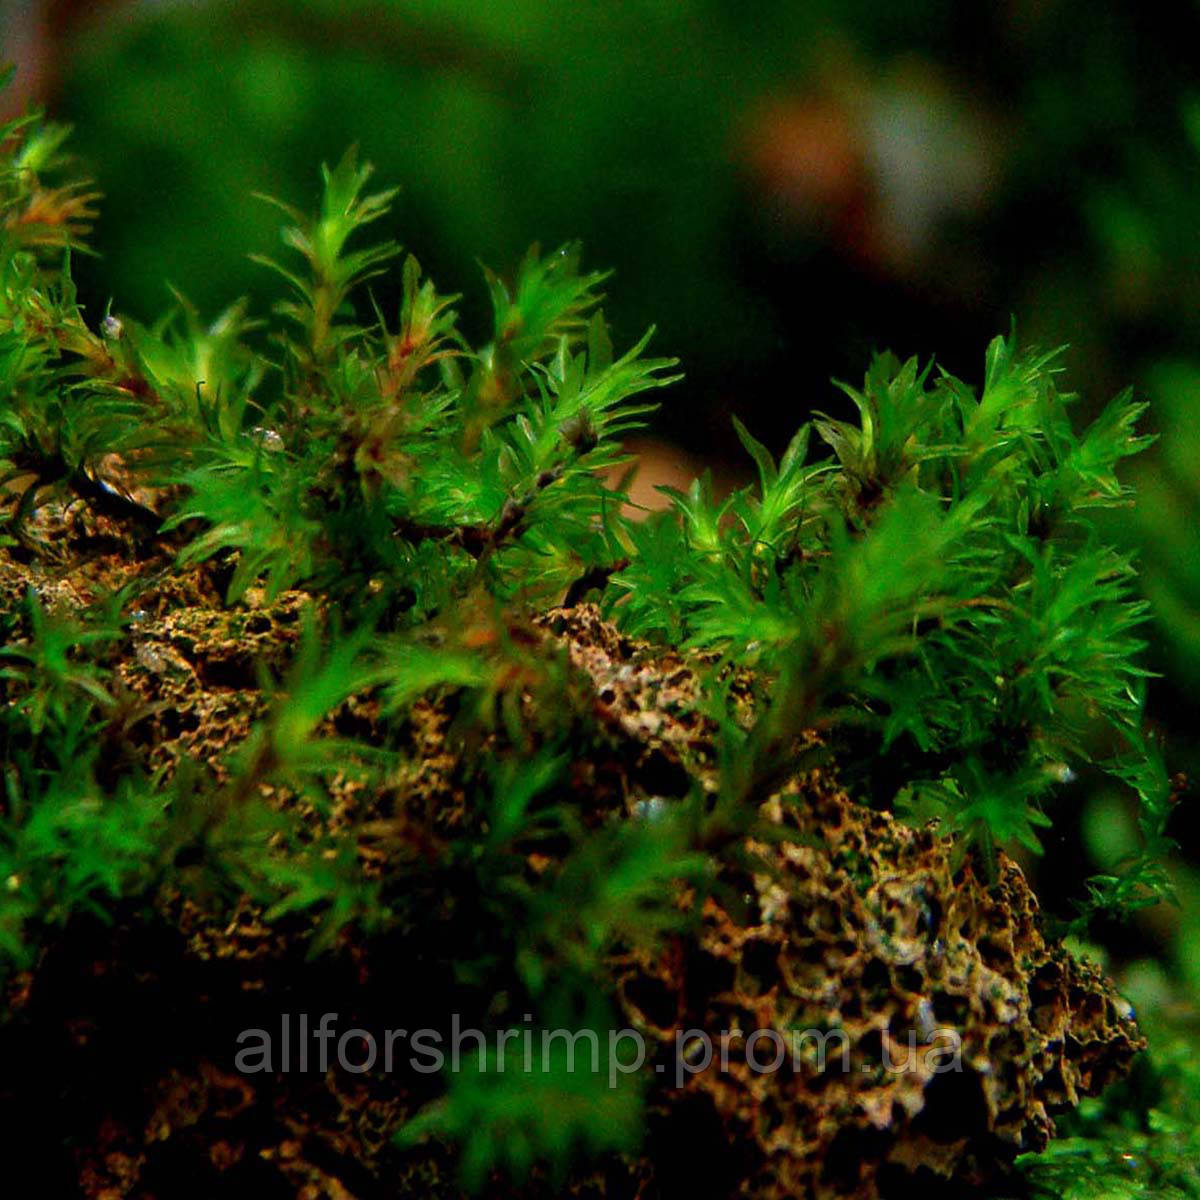 Мох Миллиметр / Barbula sp. millimeter moss, порция 3х3смНет в наличии